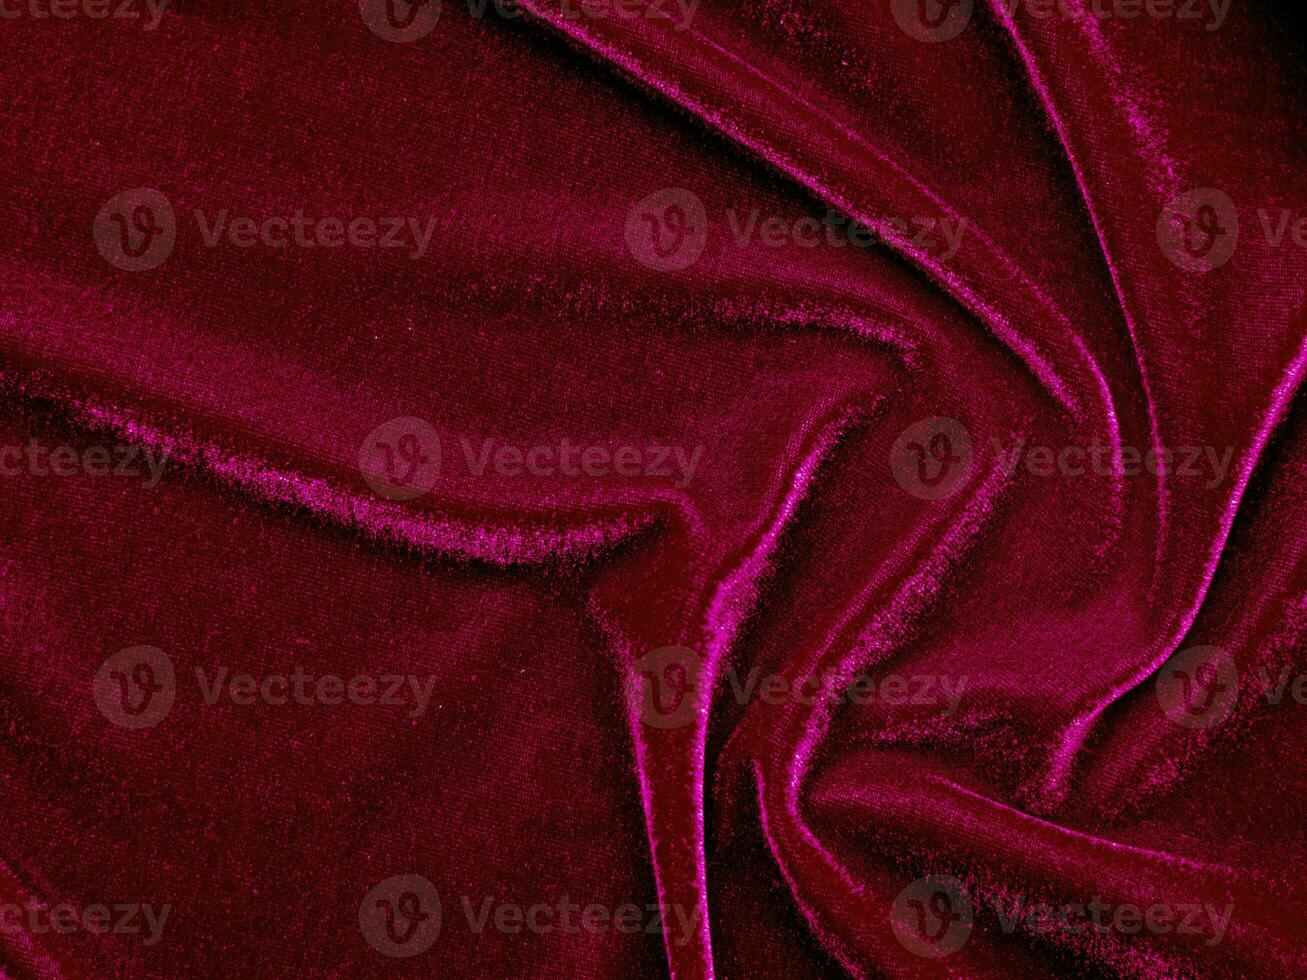 rood fluweel kleding stof structuur gebruikt net zo achtergrond. leeg rood kleding stof achtergrond van zacht en glad textiel materiaal. Daar is ruimte voor tekst.. foto